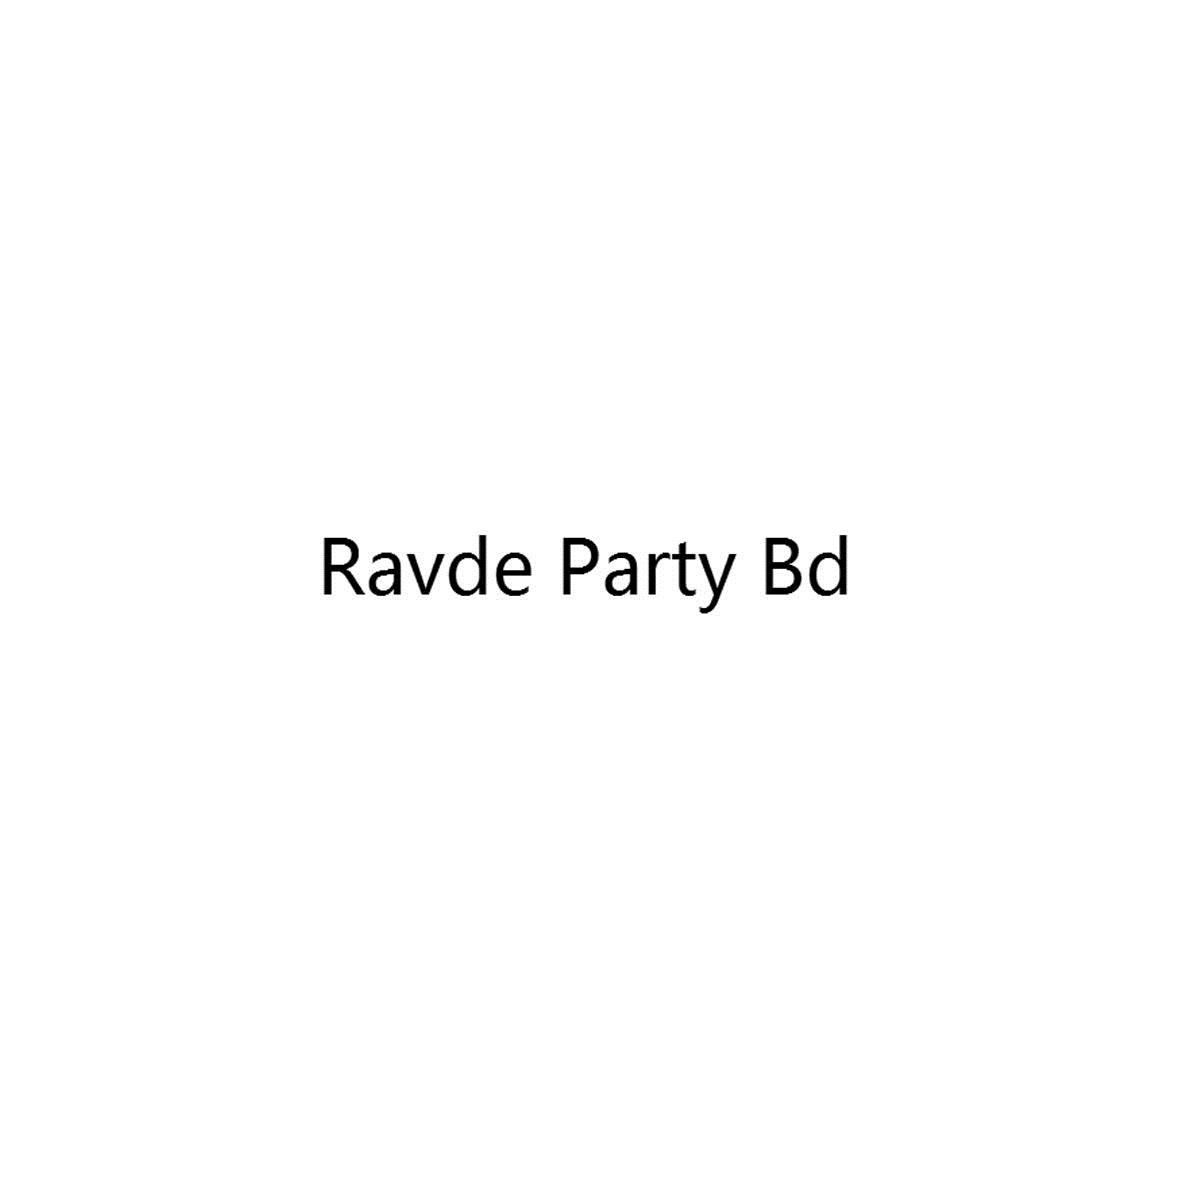 RAVDE PARTY BD